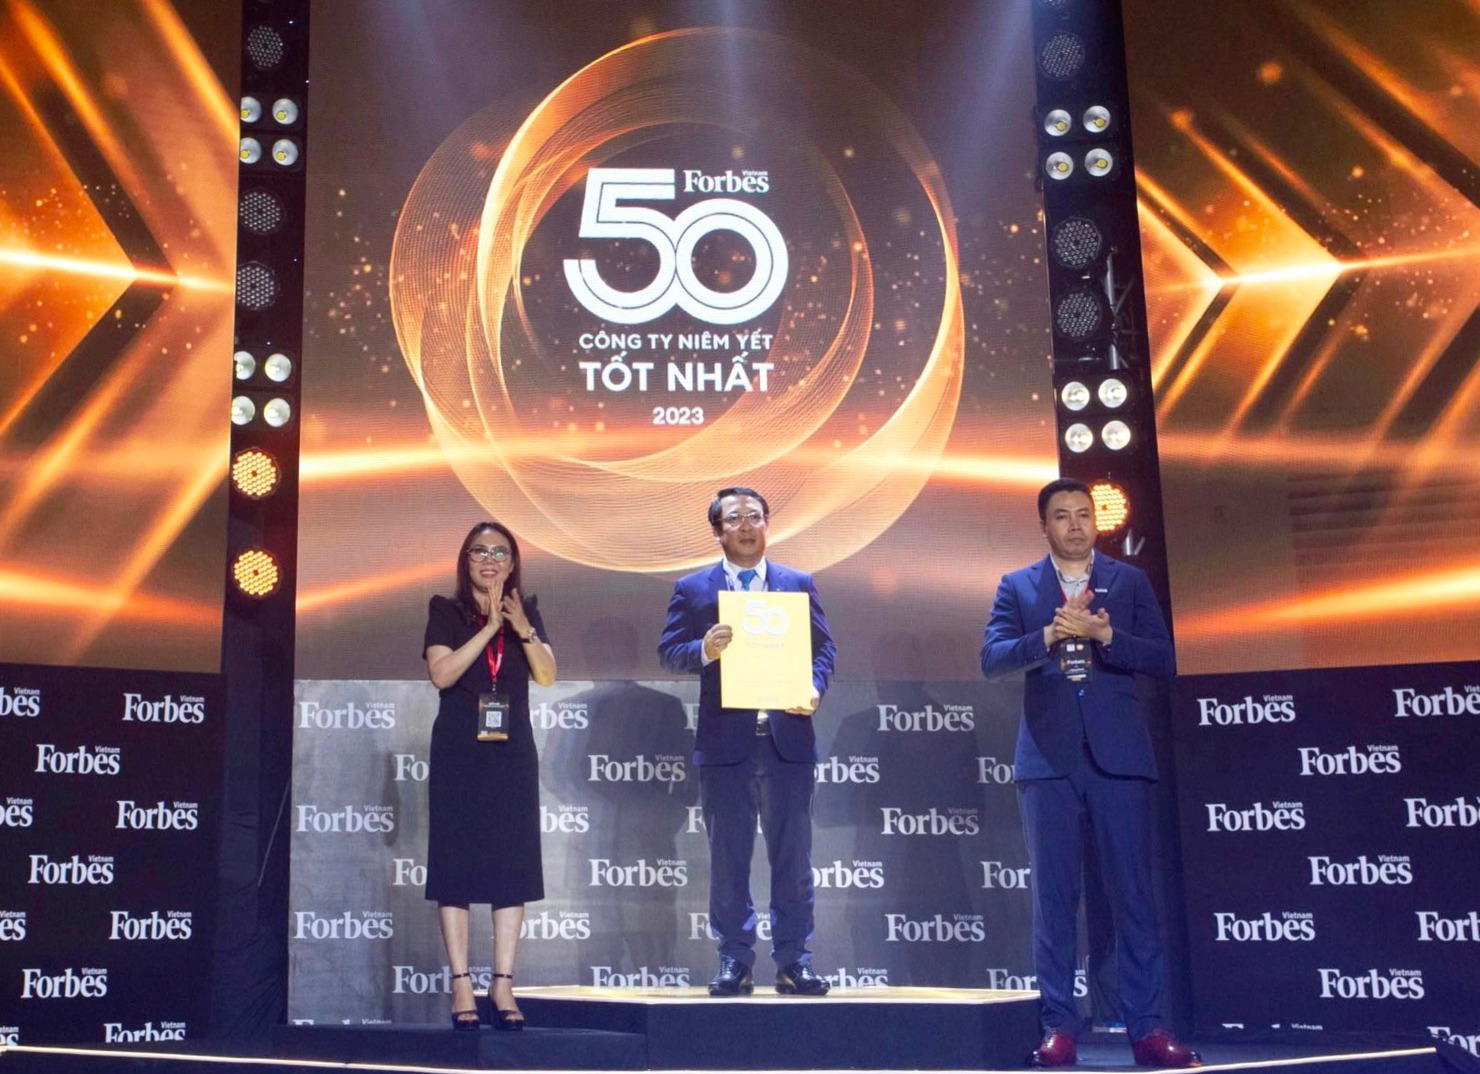 Tập đoàn Bảo Việt là đại diện duy nhất ngành Bảo hiểm 11 năm liên tiếp được Forbes Việt Nam vinh danh